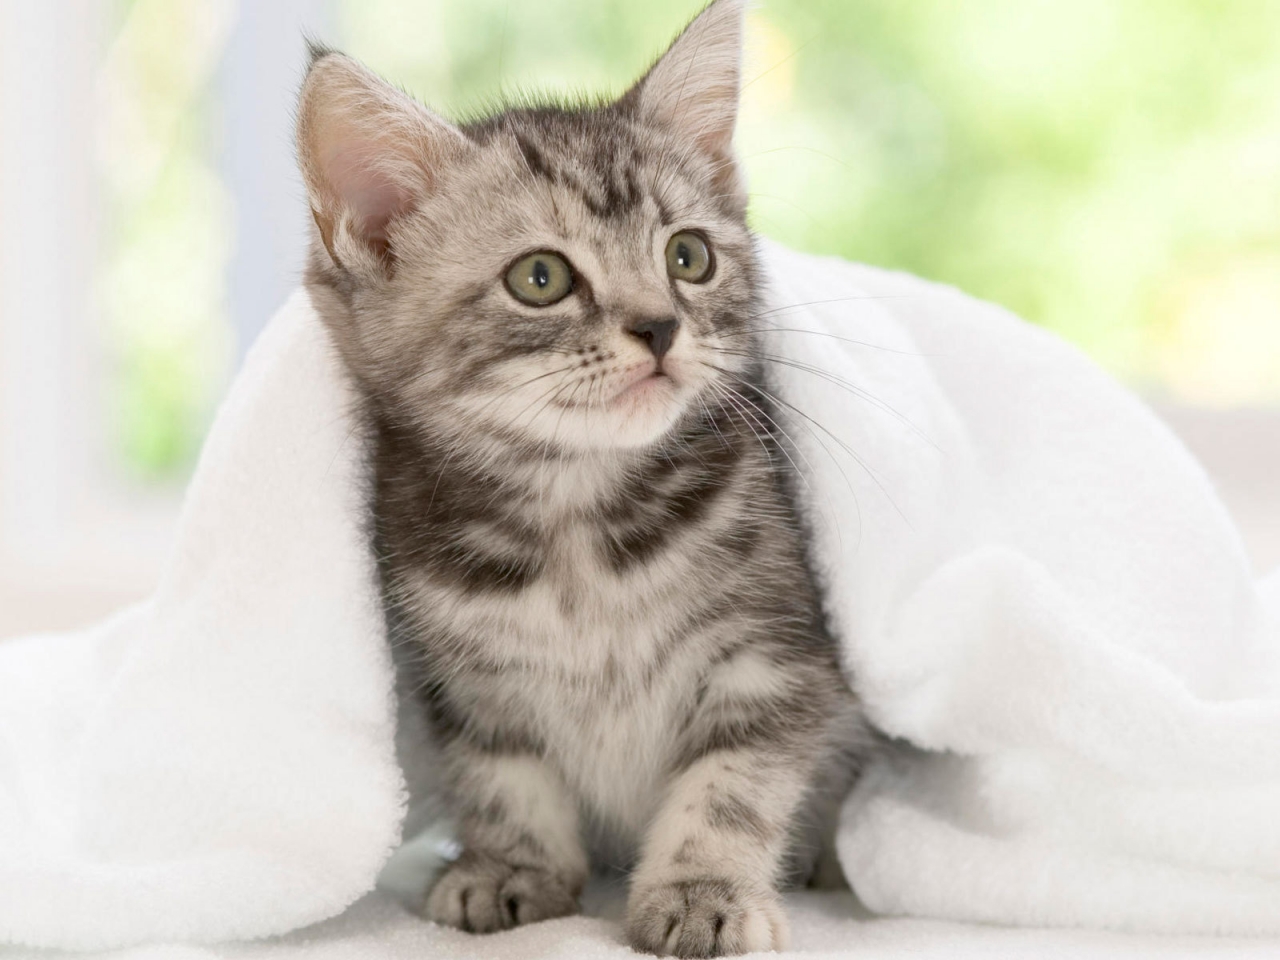 American Shorthair Kitten for 1280 x 960 resolution